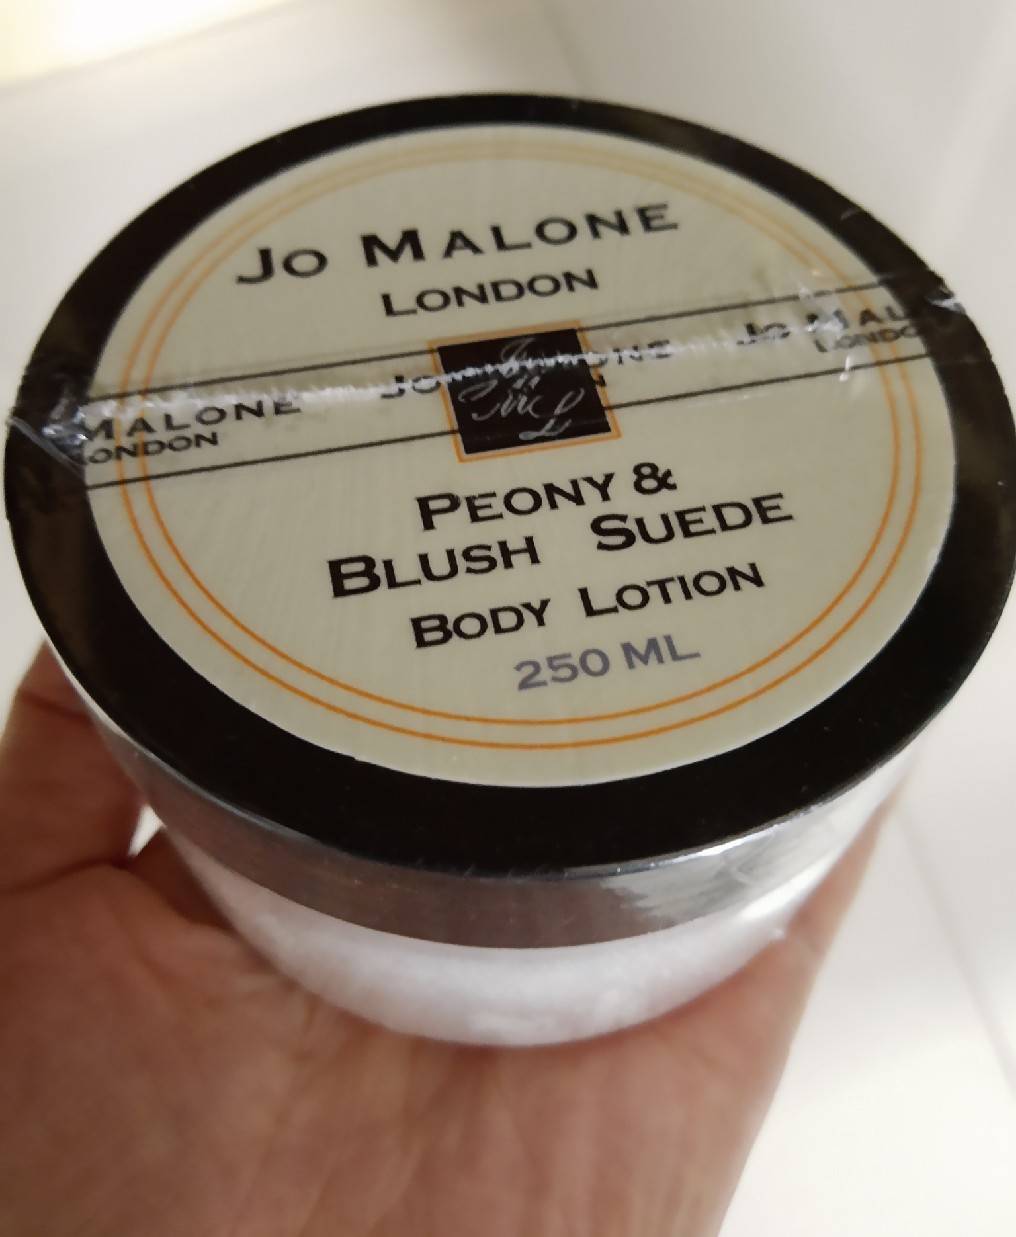 ครีมน้ำหอม JO MALONE LONDON Peony  Blush Suede cologne Body Lotion เพิ่มปริมาณเป็น 250ml.